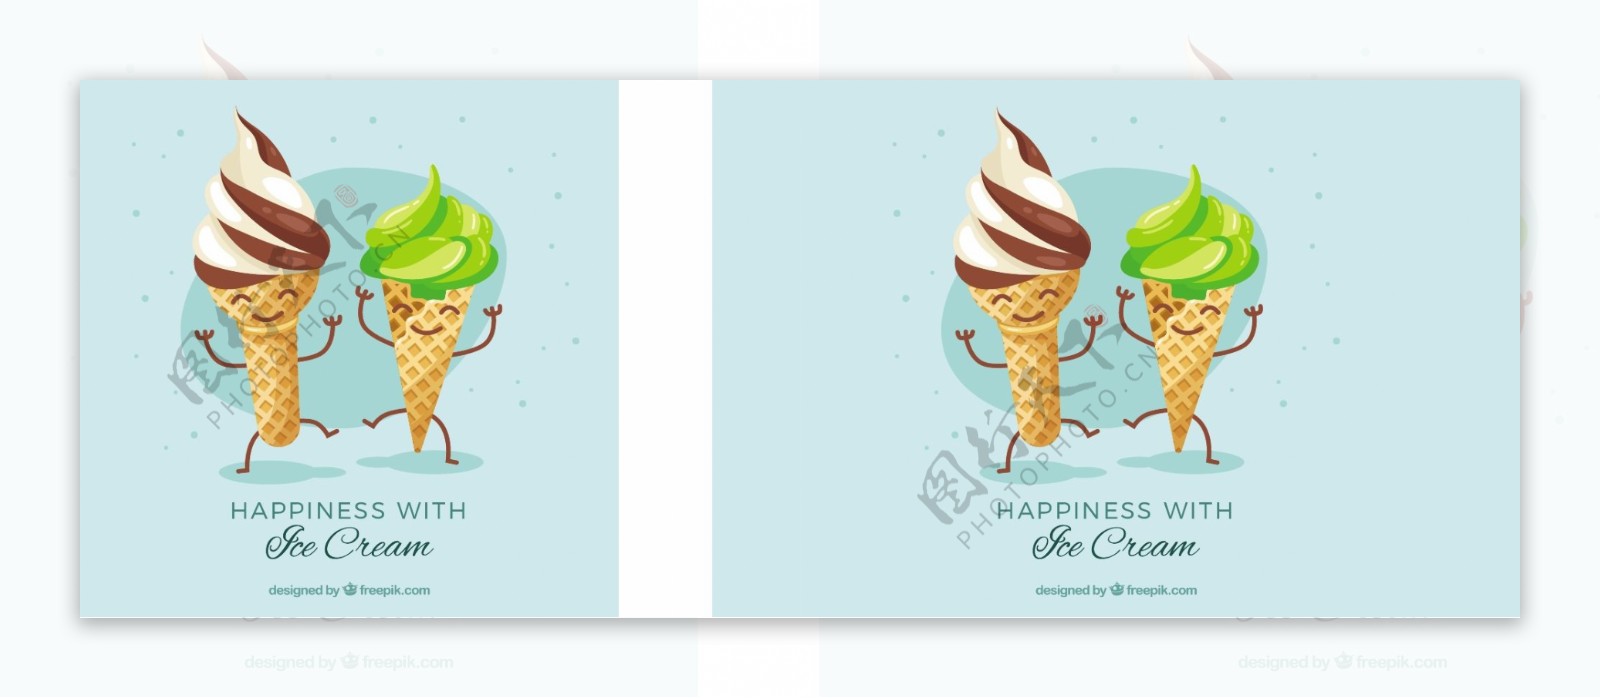 两个可爱的冰淇淋卡通人物蓝色背景